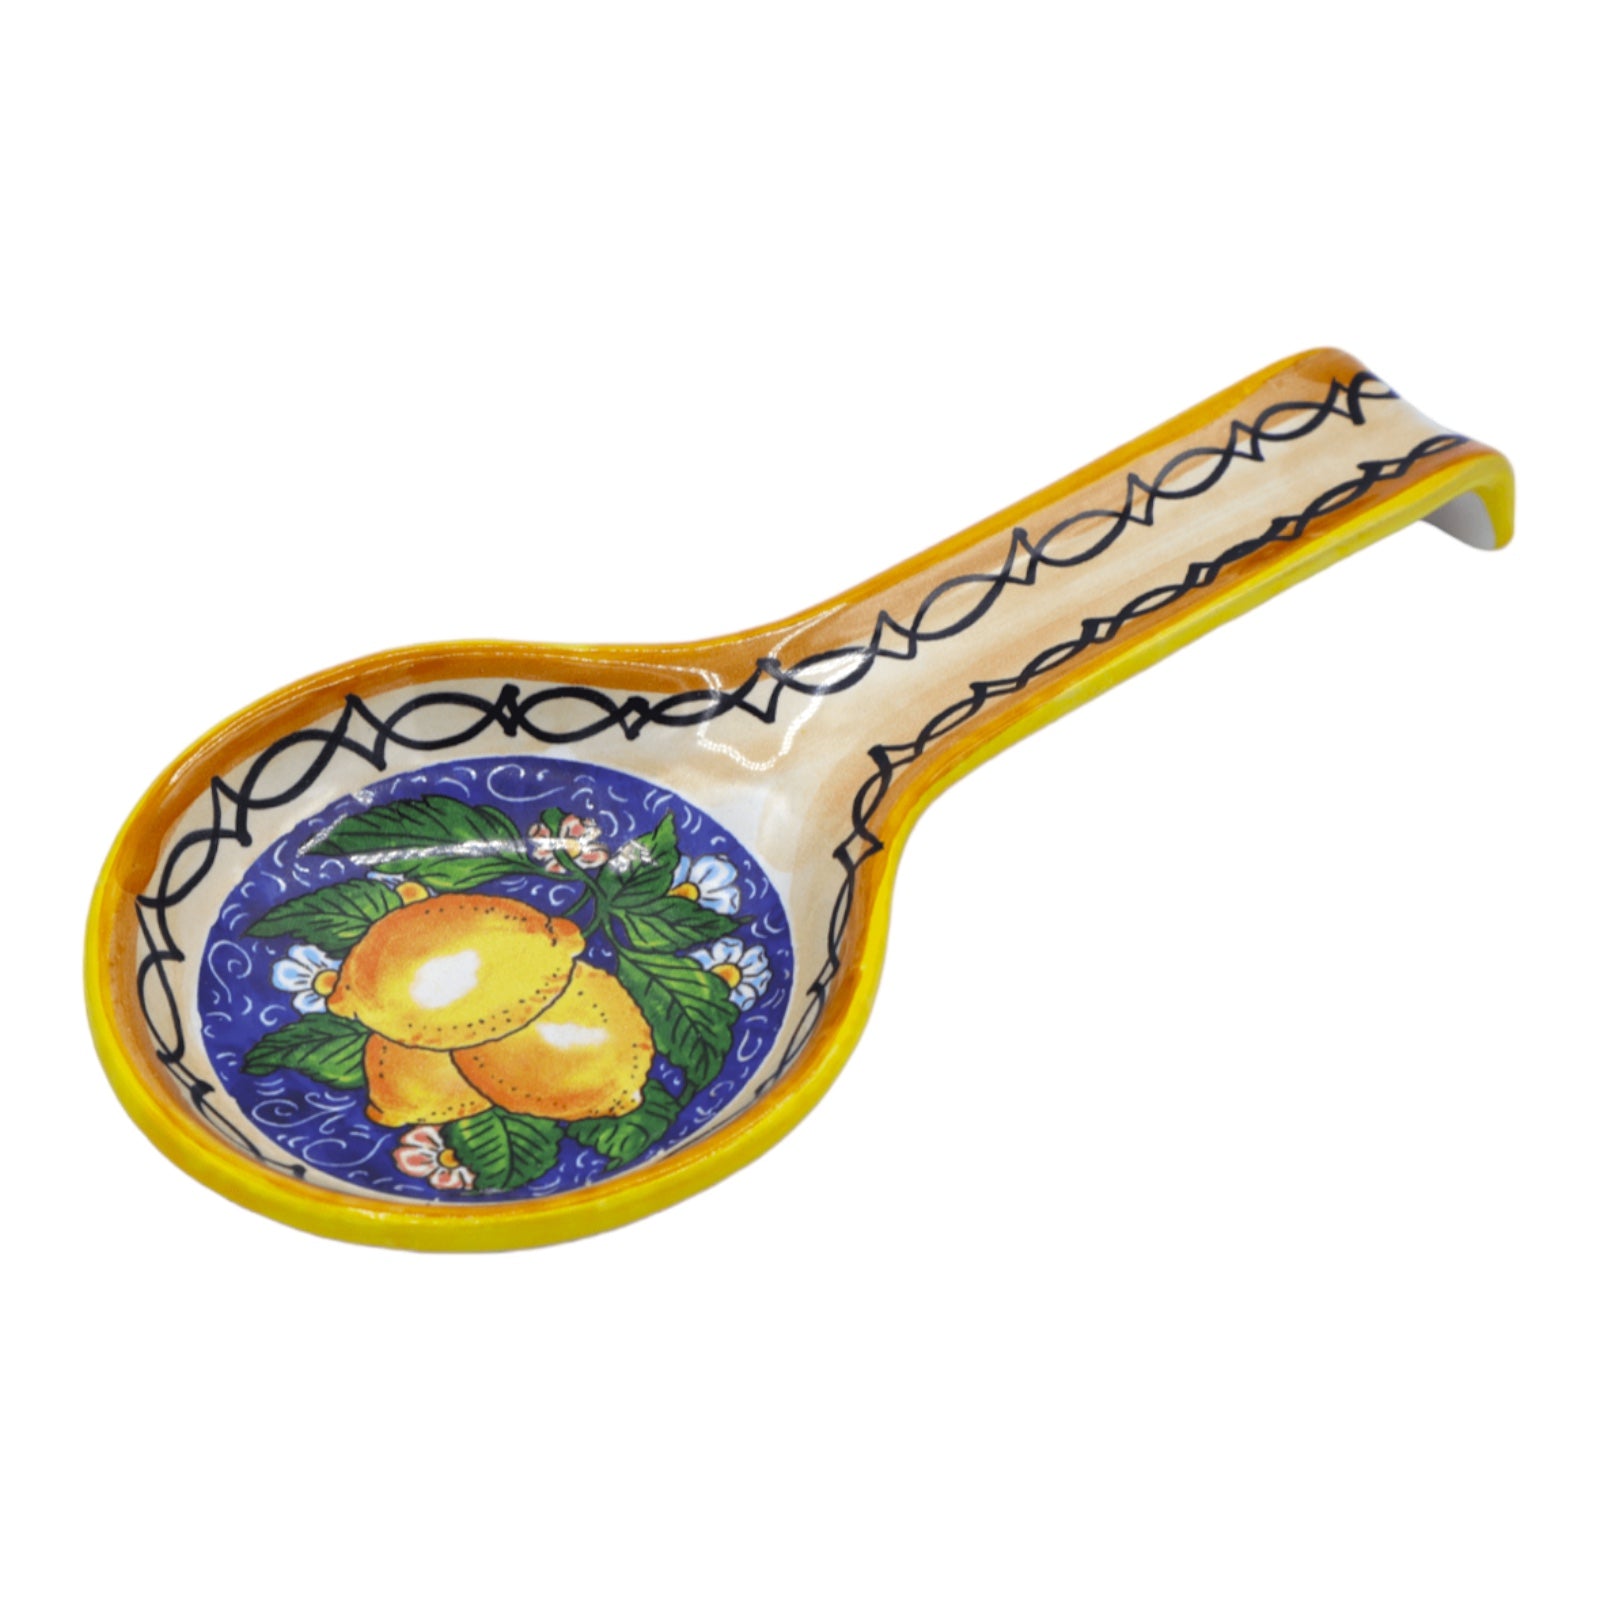 Rest Spoon in fine ceramic, Lemon & Flowers, l 27 x 12 cm approx. (1pc)